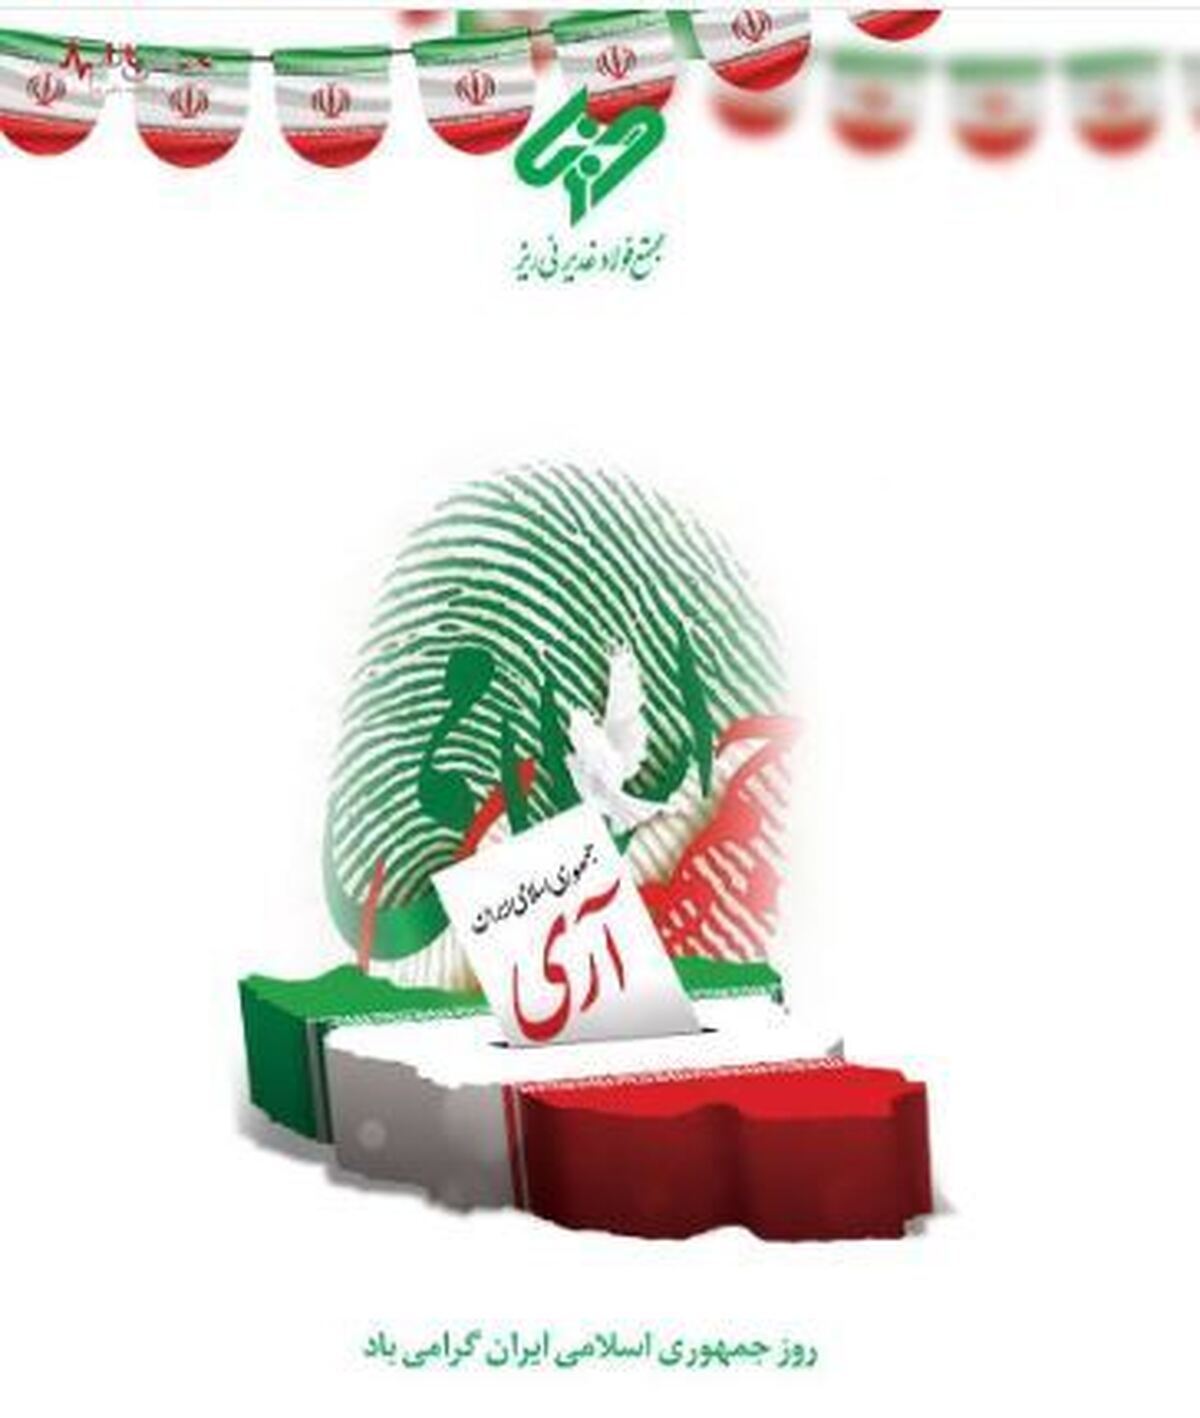 پیام مدیرعامل مجتمع فولاد غدیر نی ریز، به مناسبت فرارسیدن ۱۲ فروردین روز جمهوری اسلامی ایران